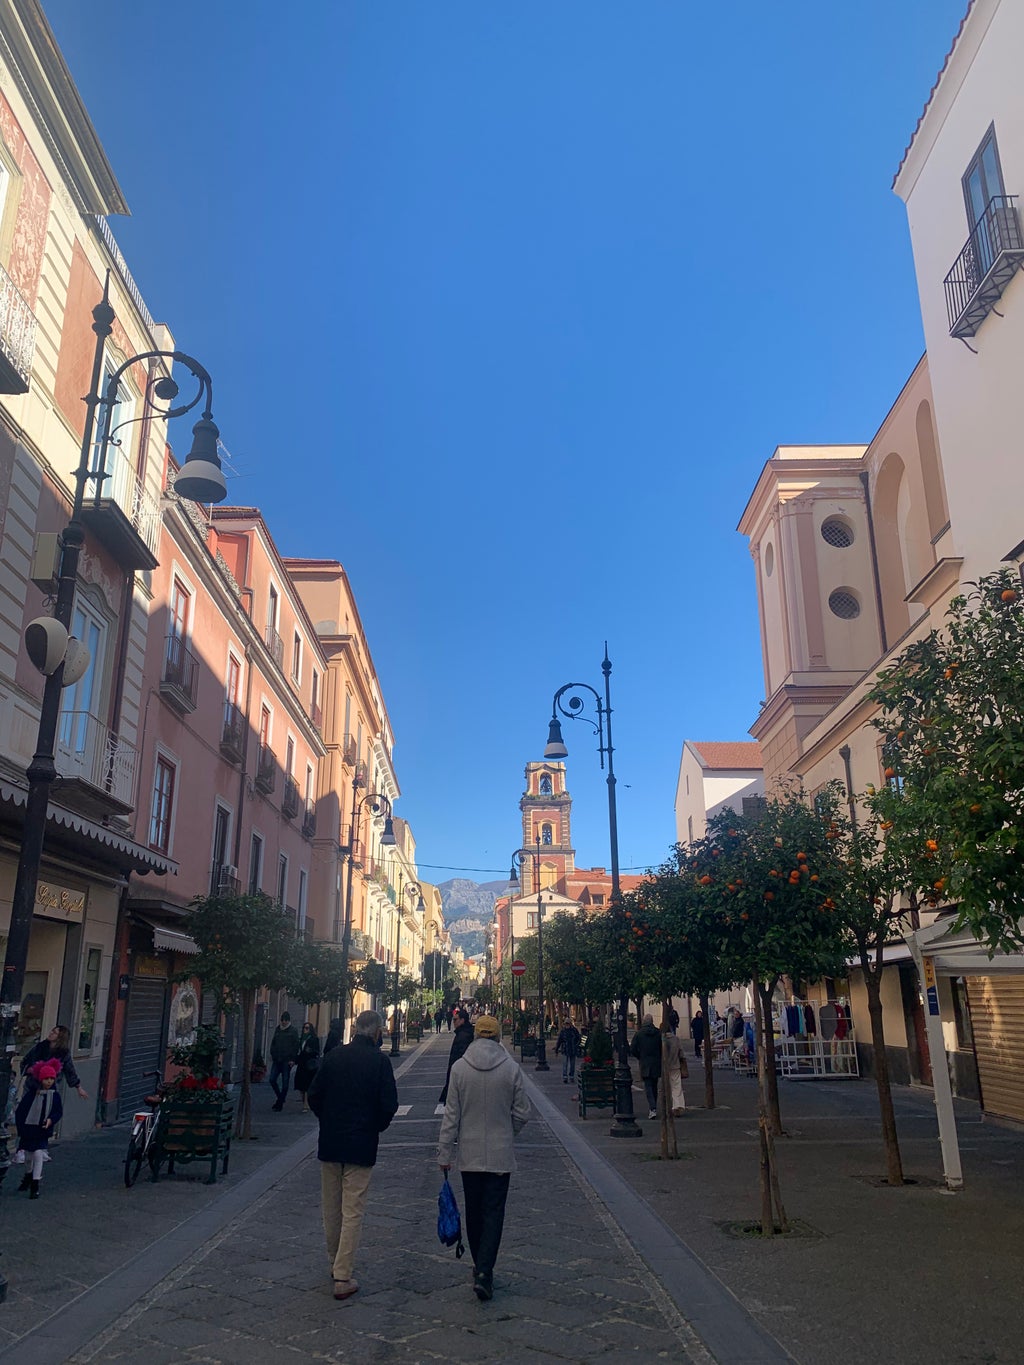 Image of Corso Italia, the main street in Sorrento, Italy